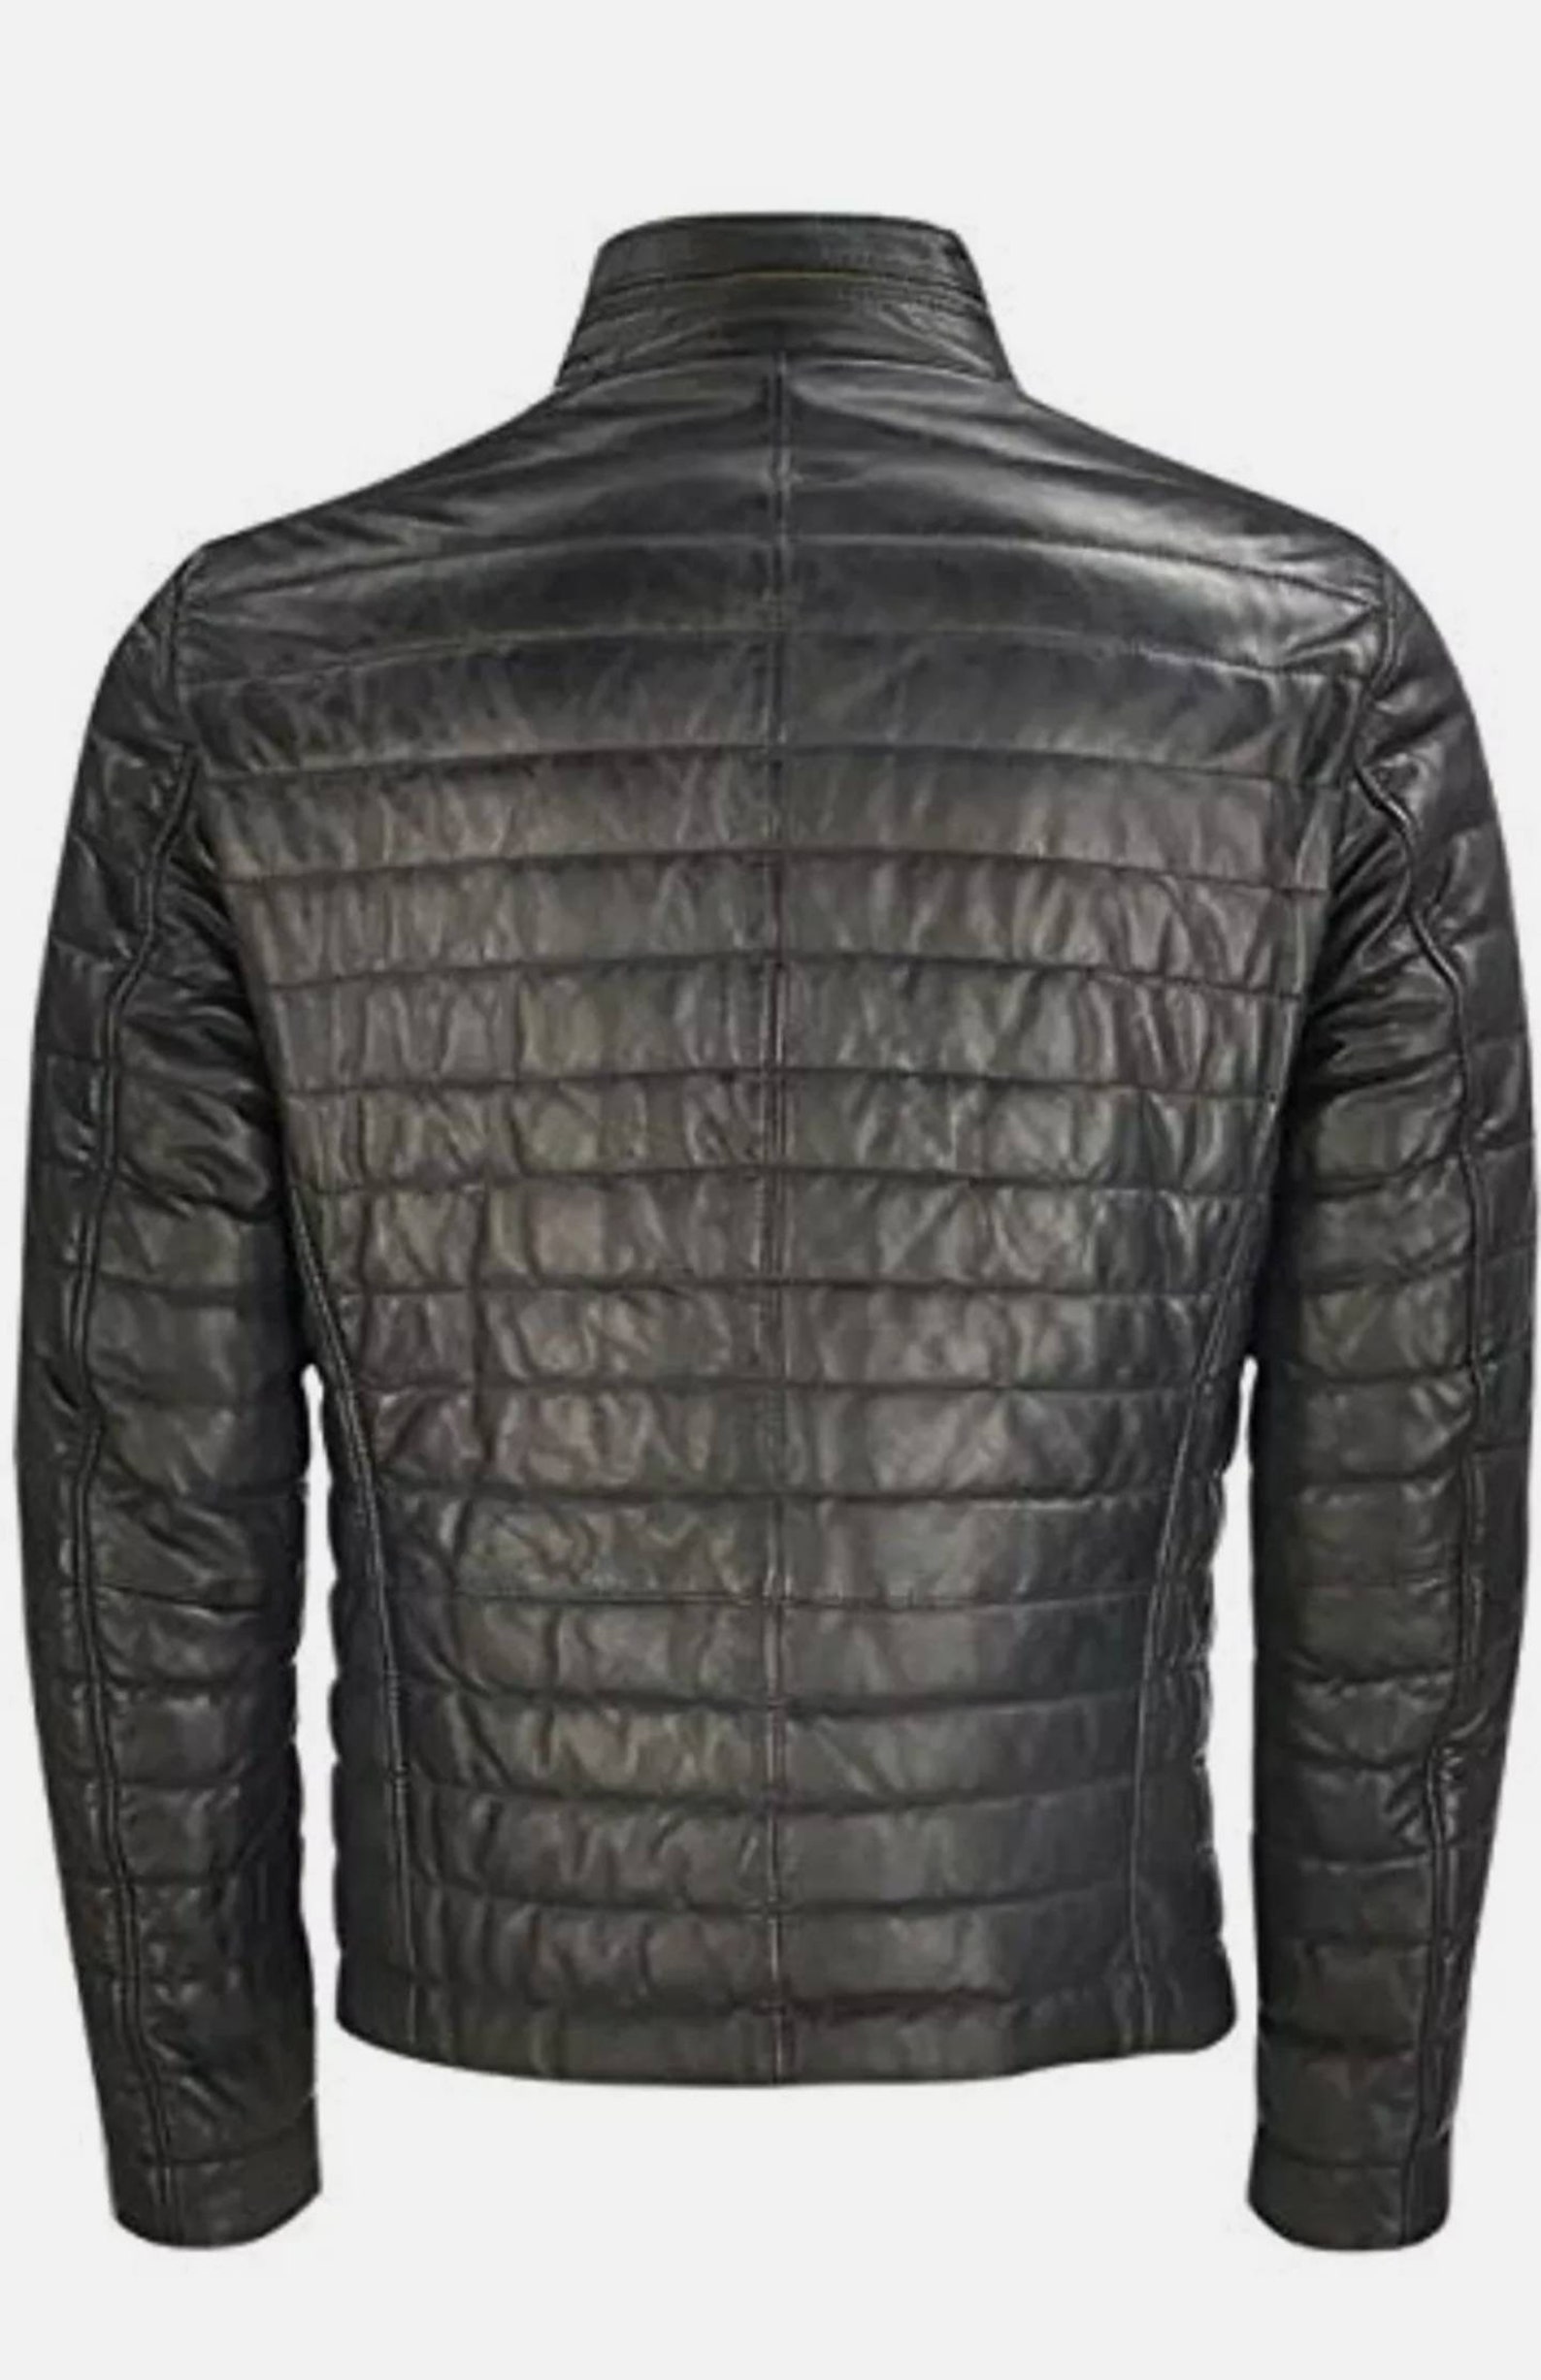 Milestone men's leather jacket | Etsy